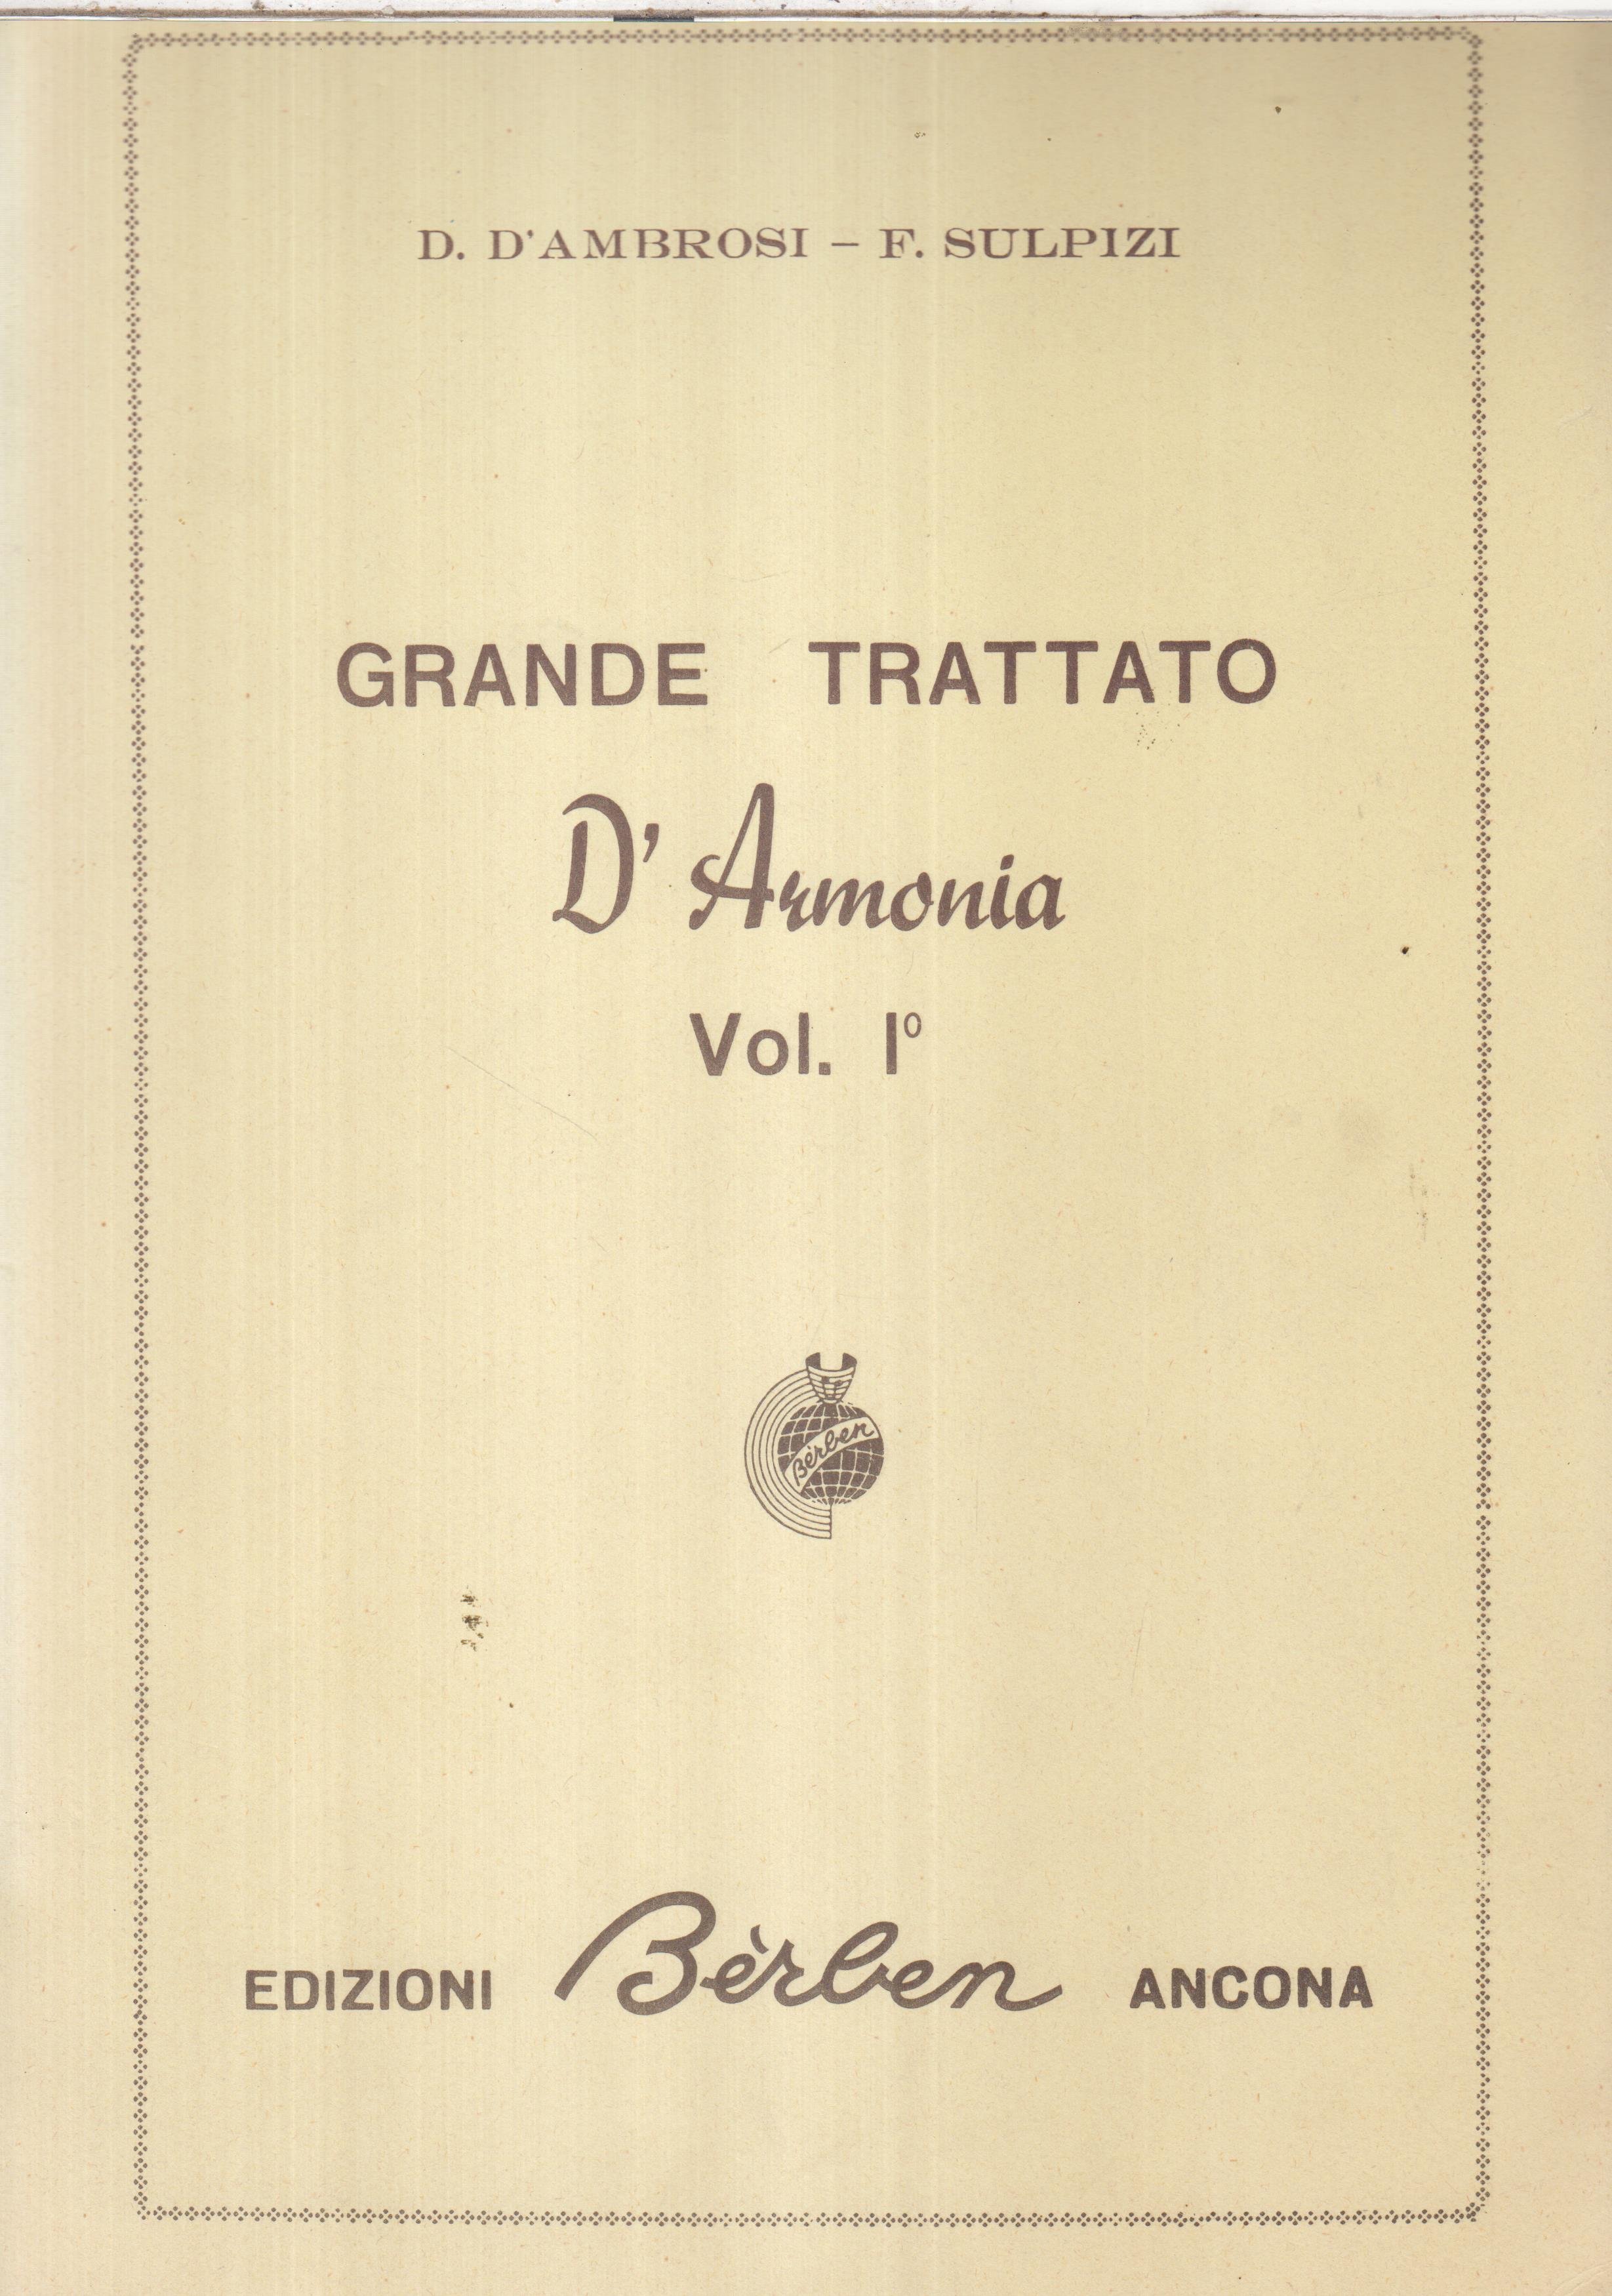 GRANDE TRATTATO D'armonia Vol. I°